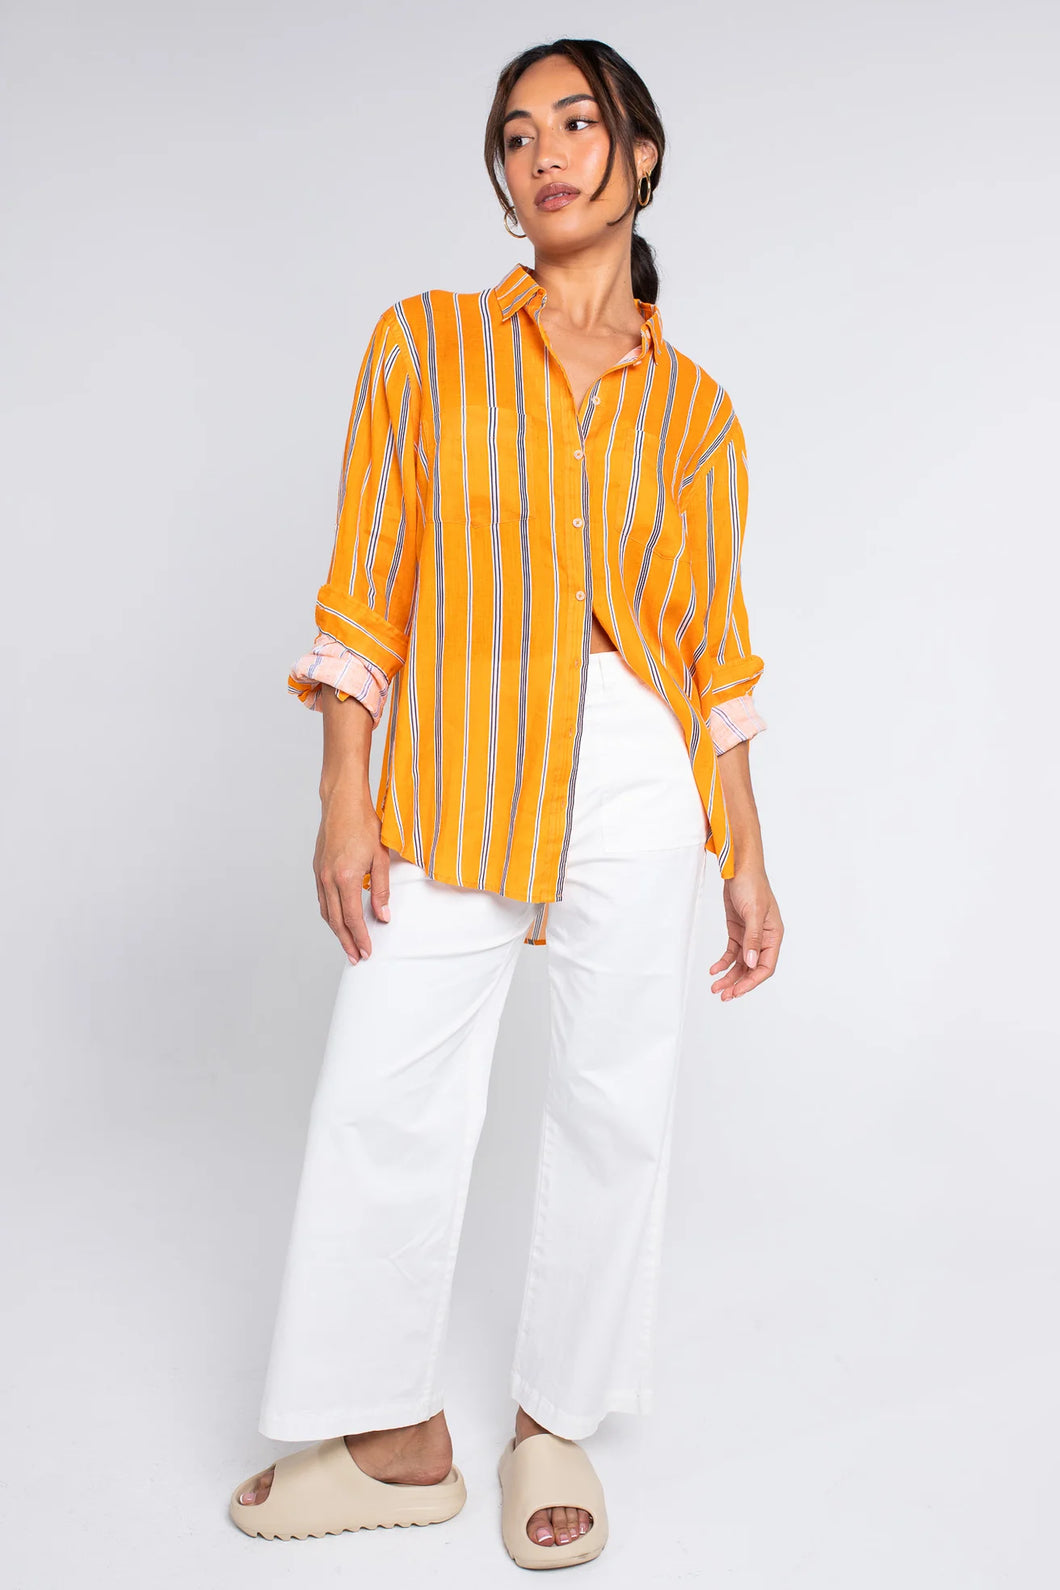 The Boyfriend Linen Shirt in Orange/Black Stripe by Hut